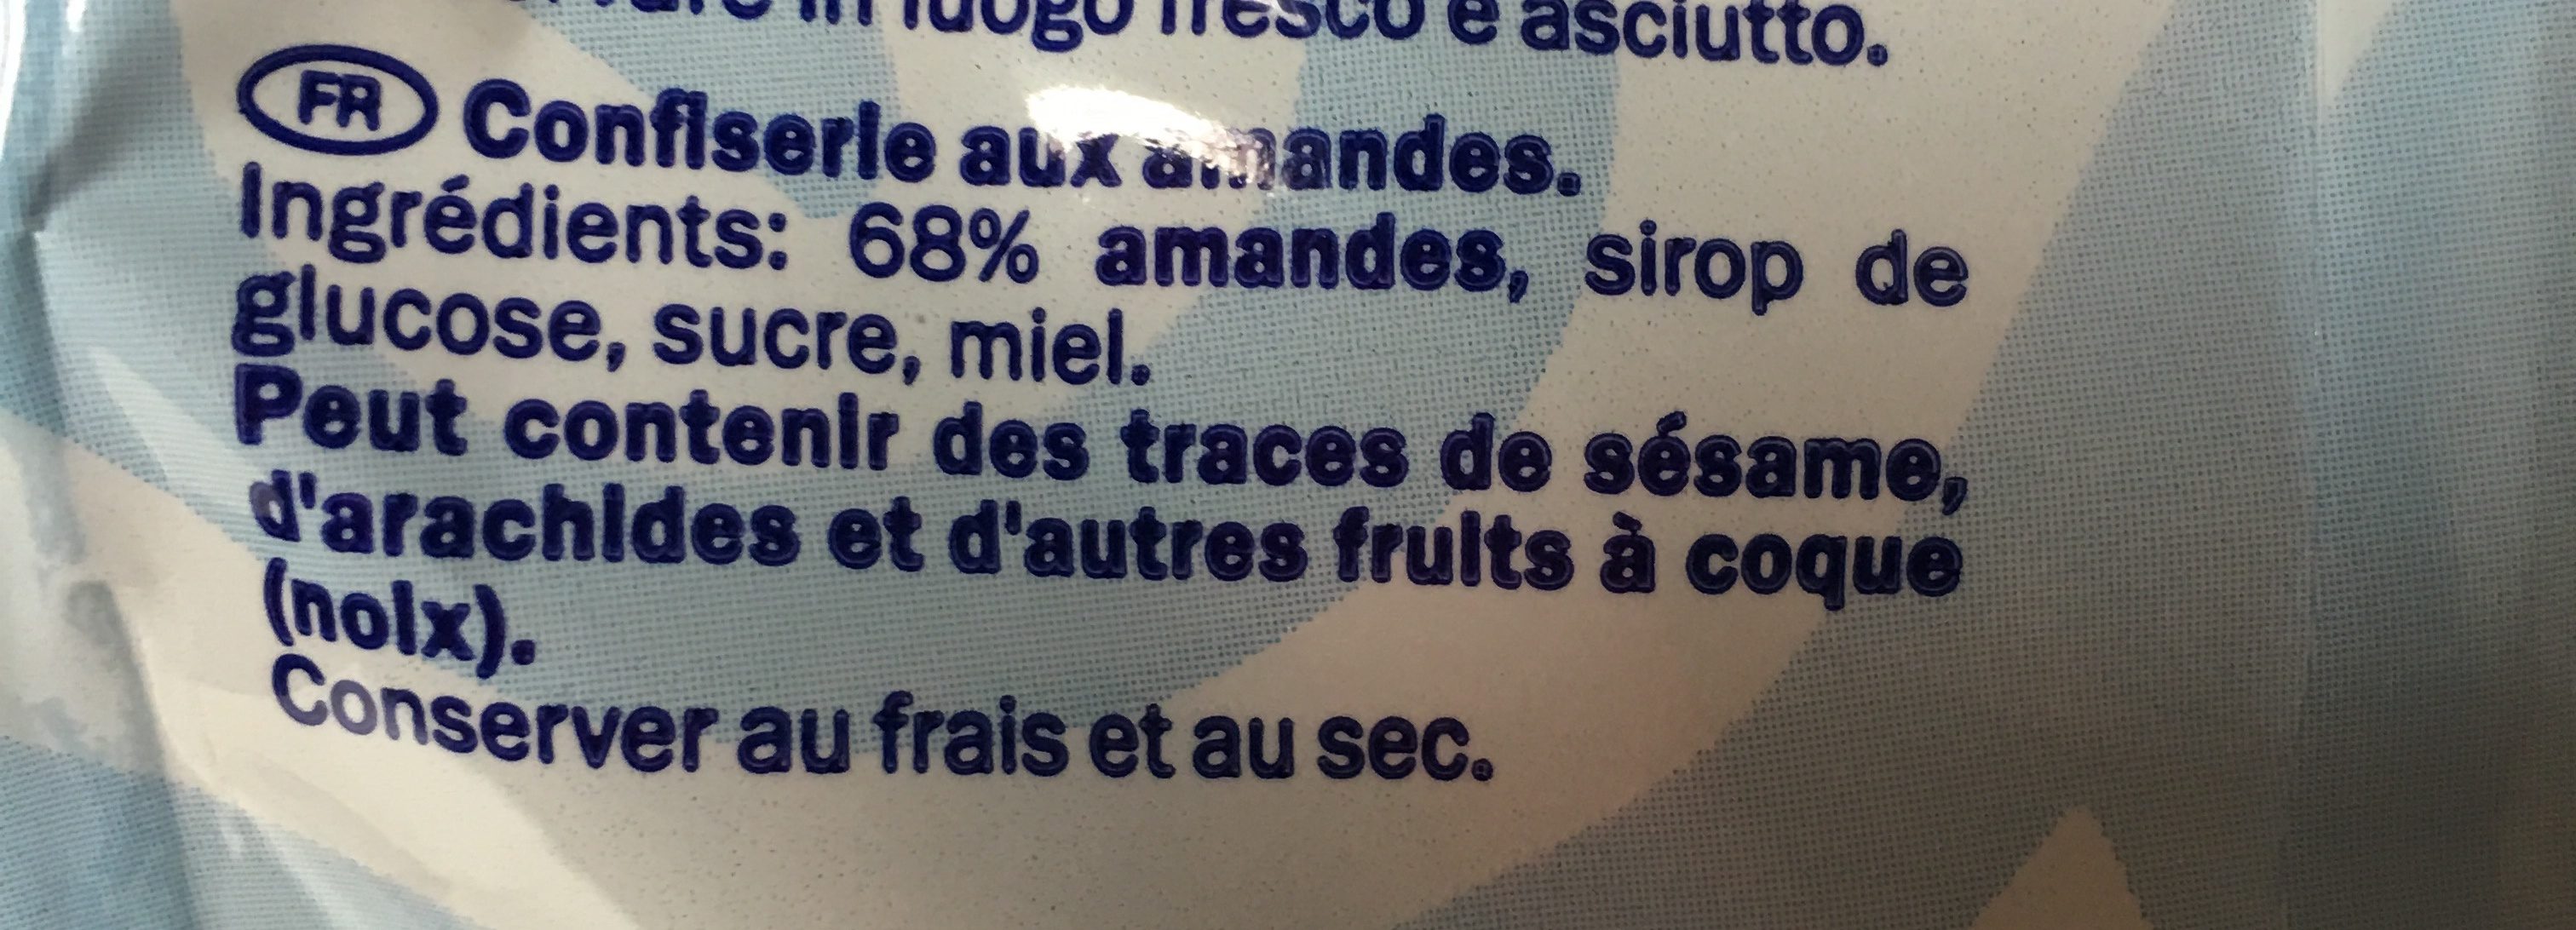 Almond bites - Zutaten - fr